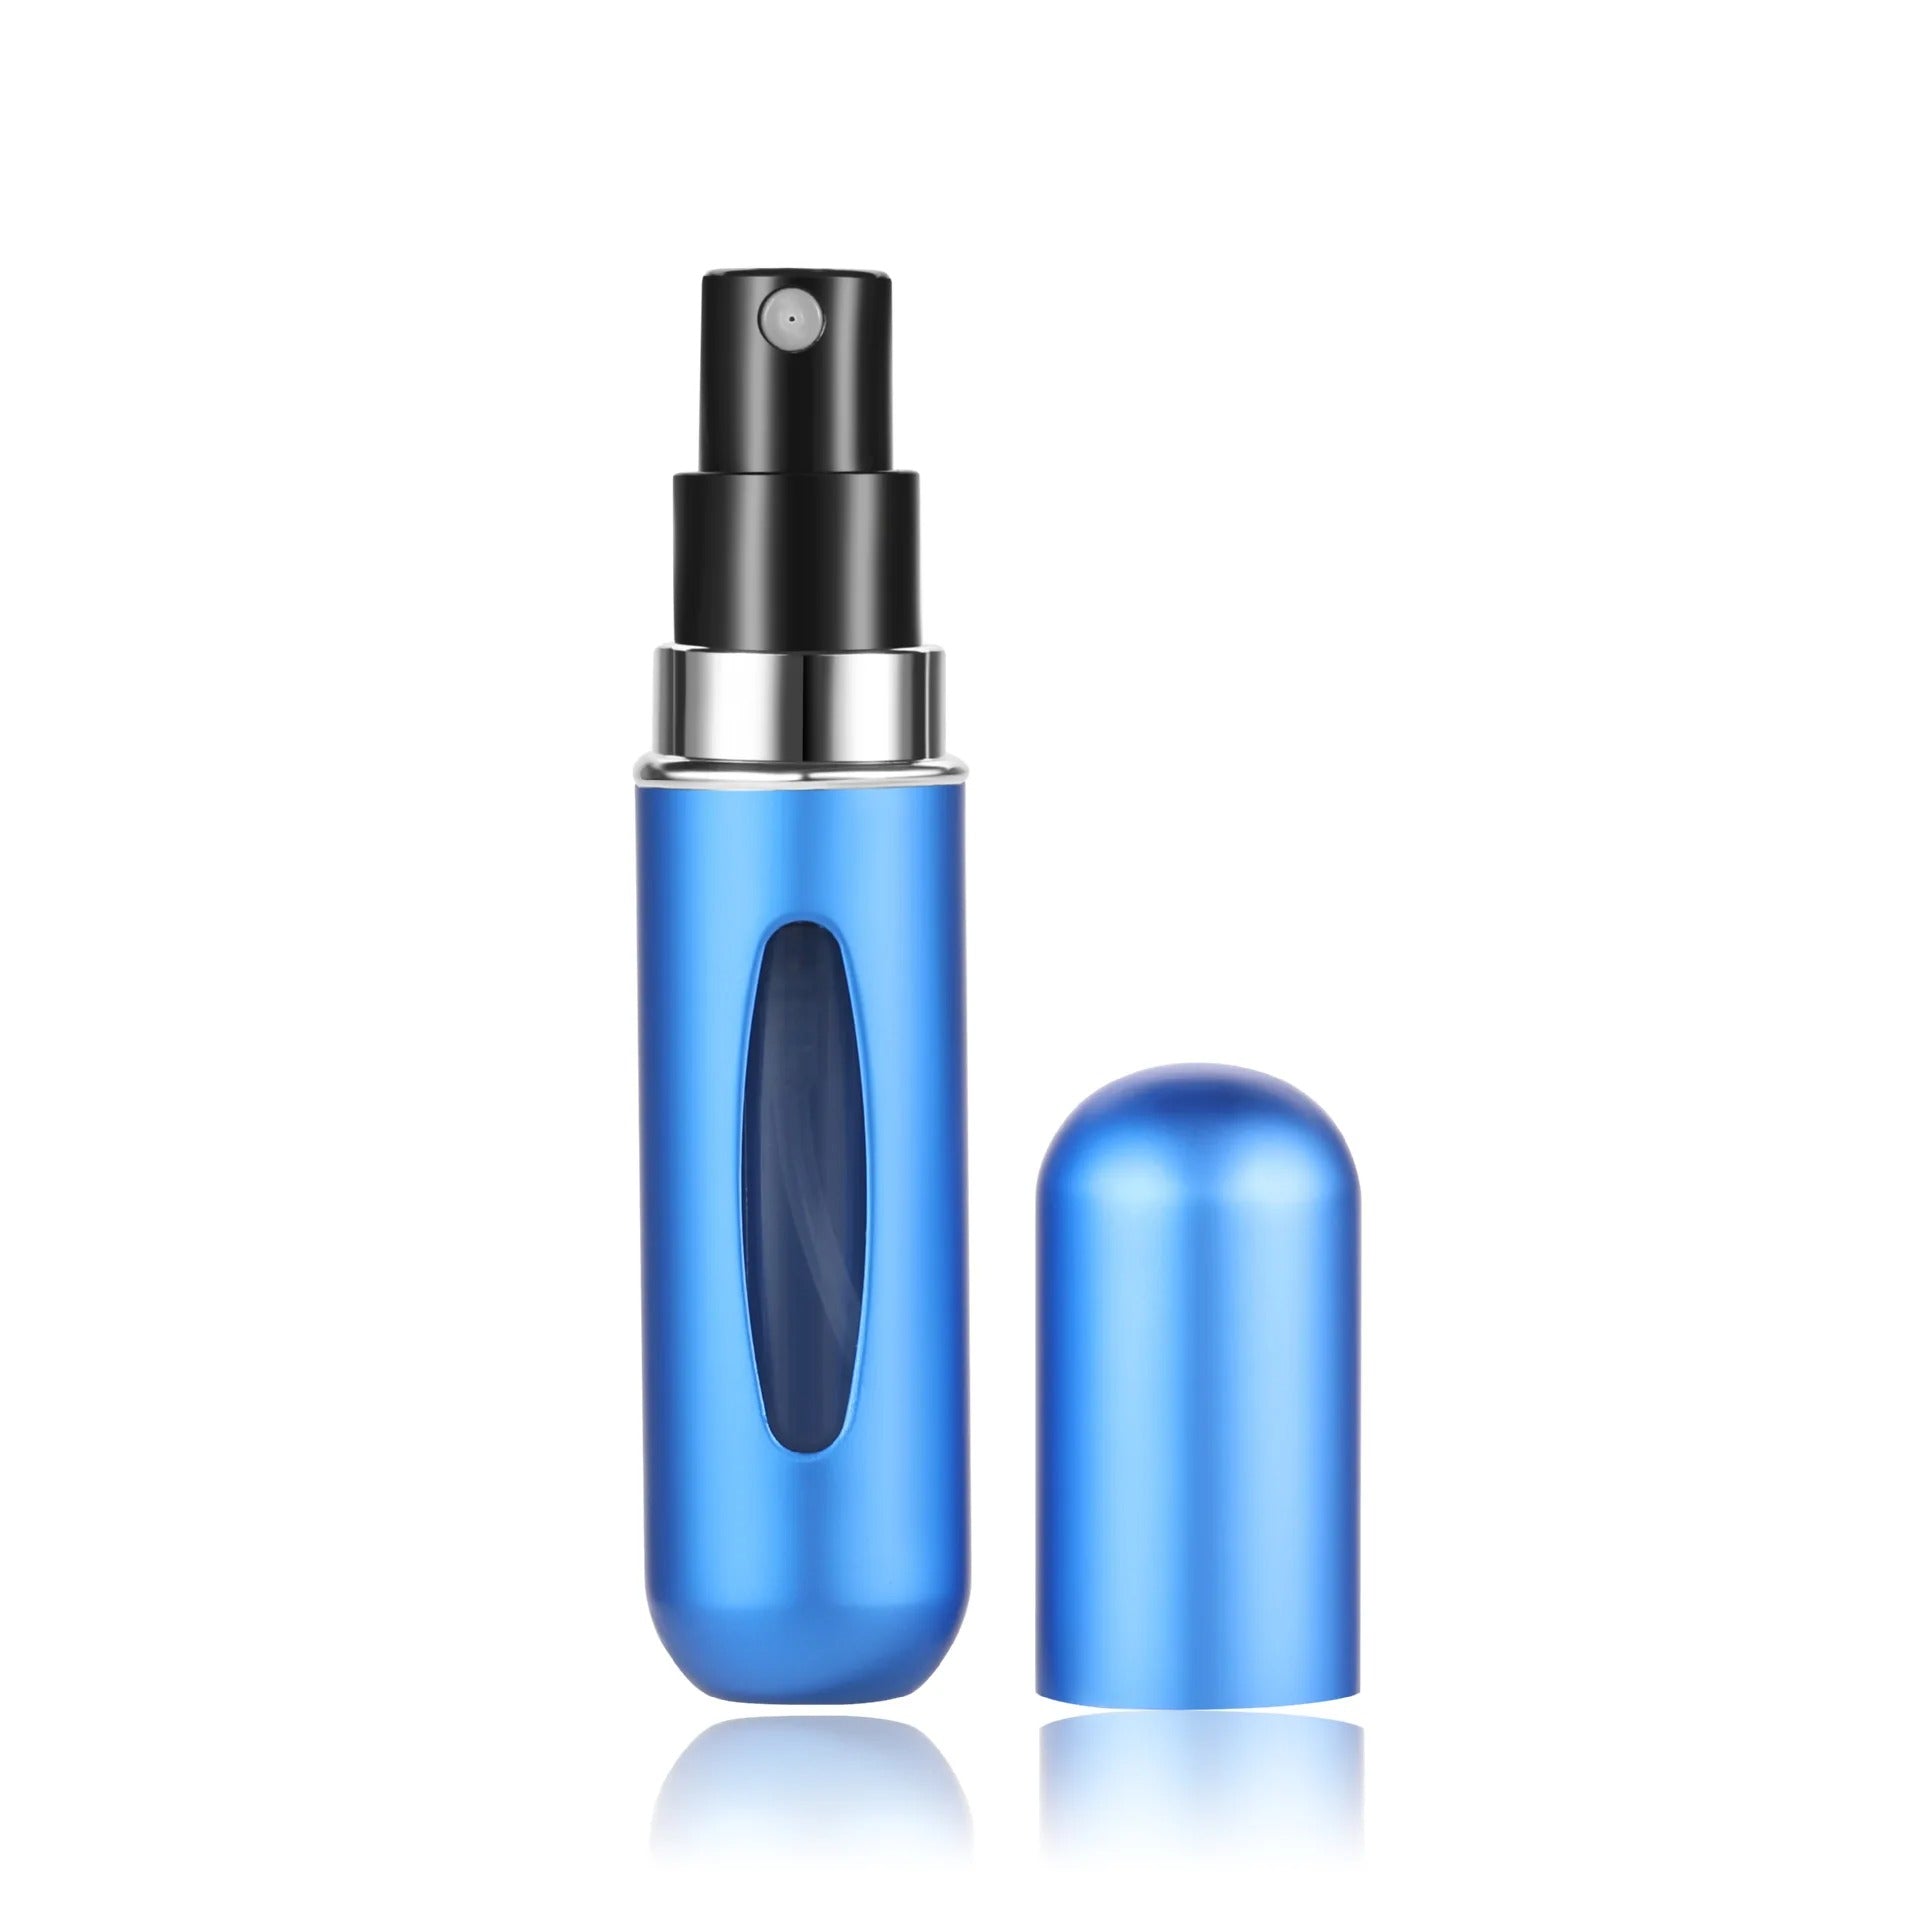 Mini Refillable Perfume Automizer Bottle